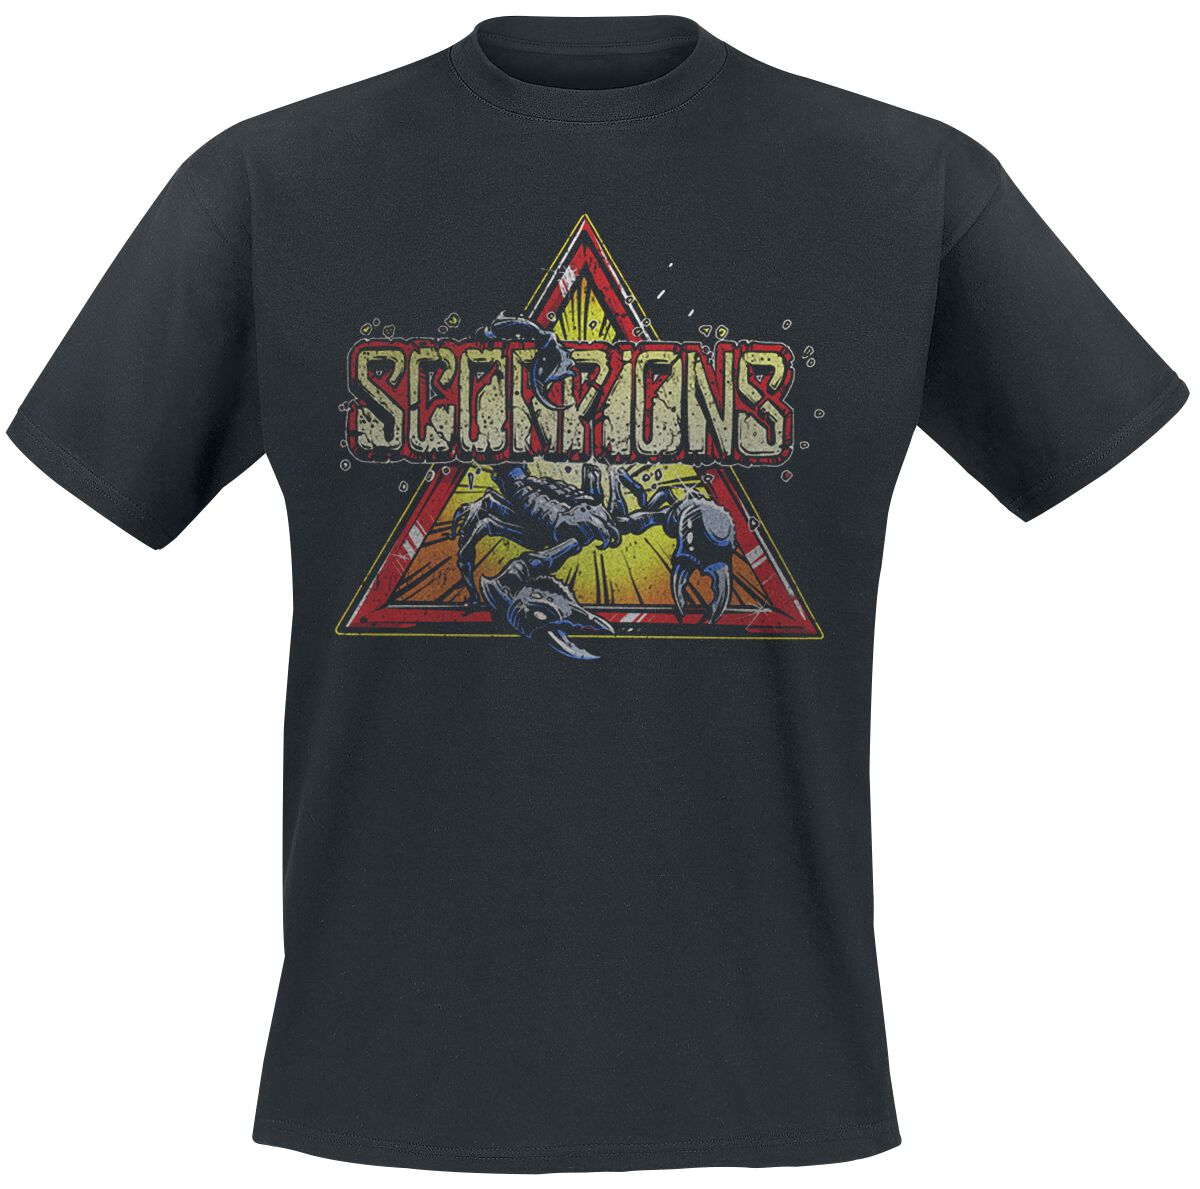 Scorpions T-Shirt - Triangle Scorpion - S bis 3XL - für Männer - Größe M - schwarz  - Lizenziertes Merchandise!